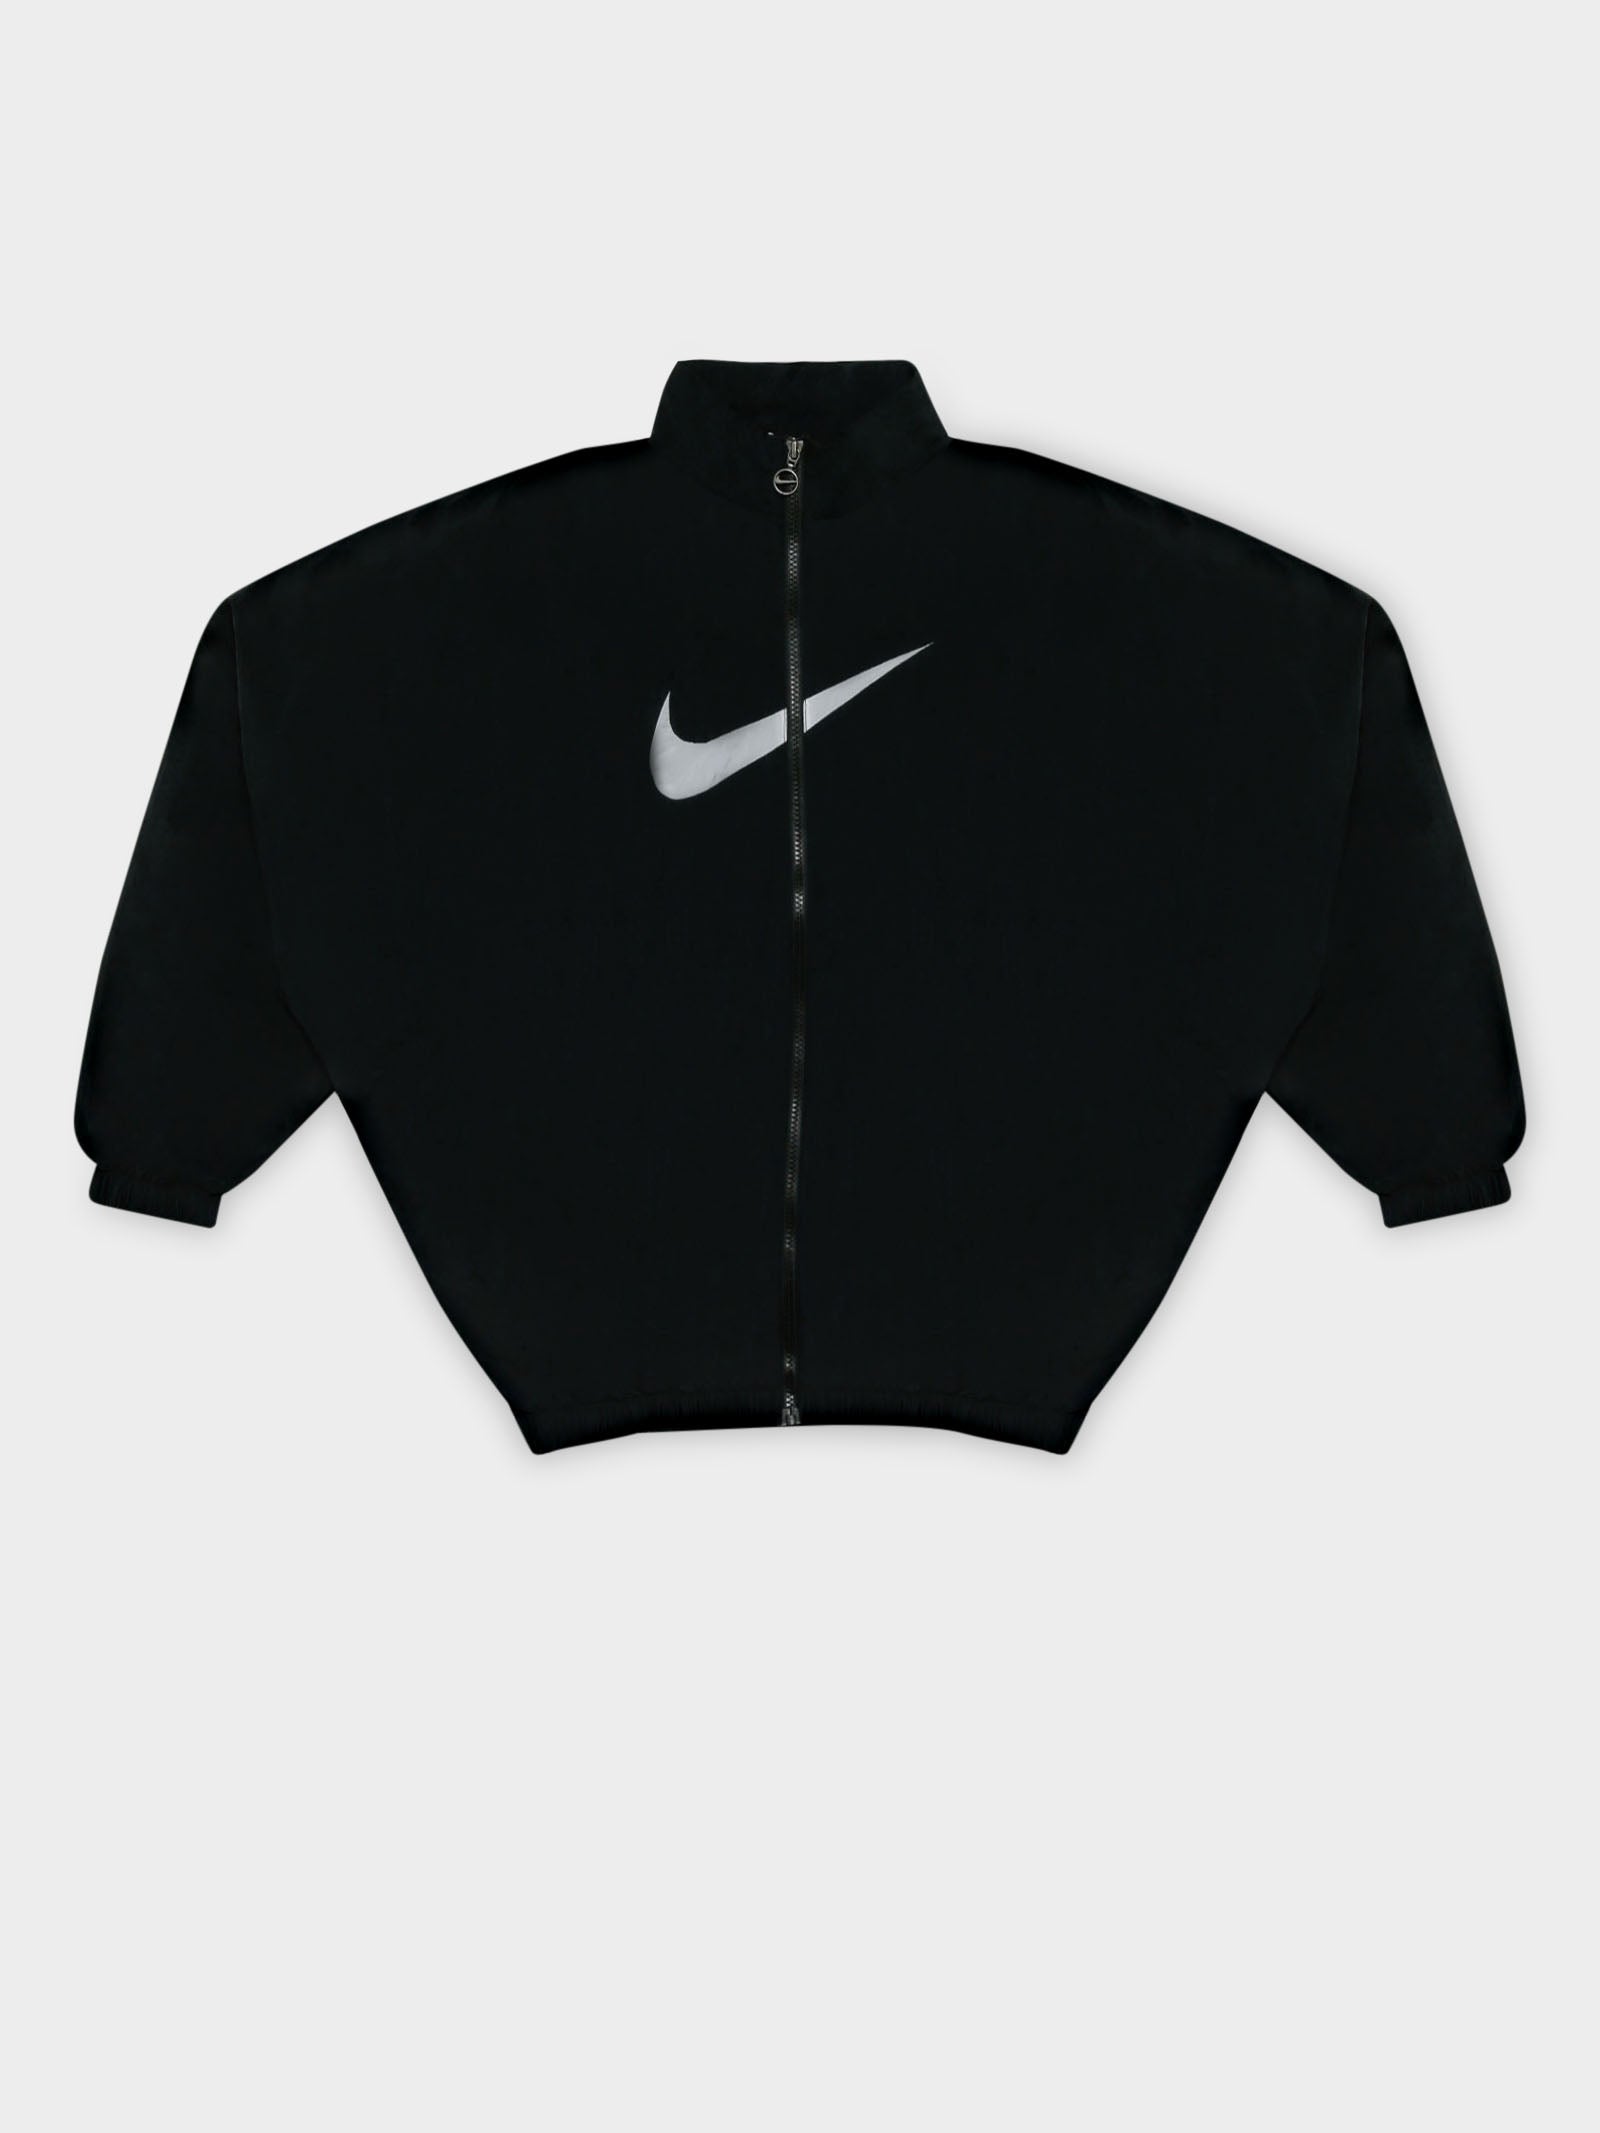 Nike Sportswear Women's Essential Woven Jacket Black / White